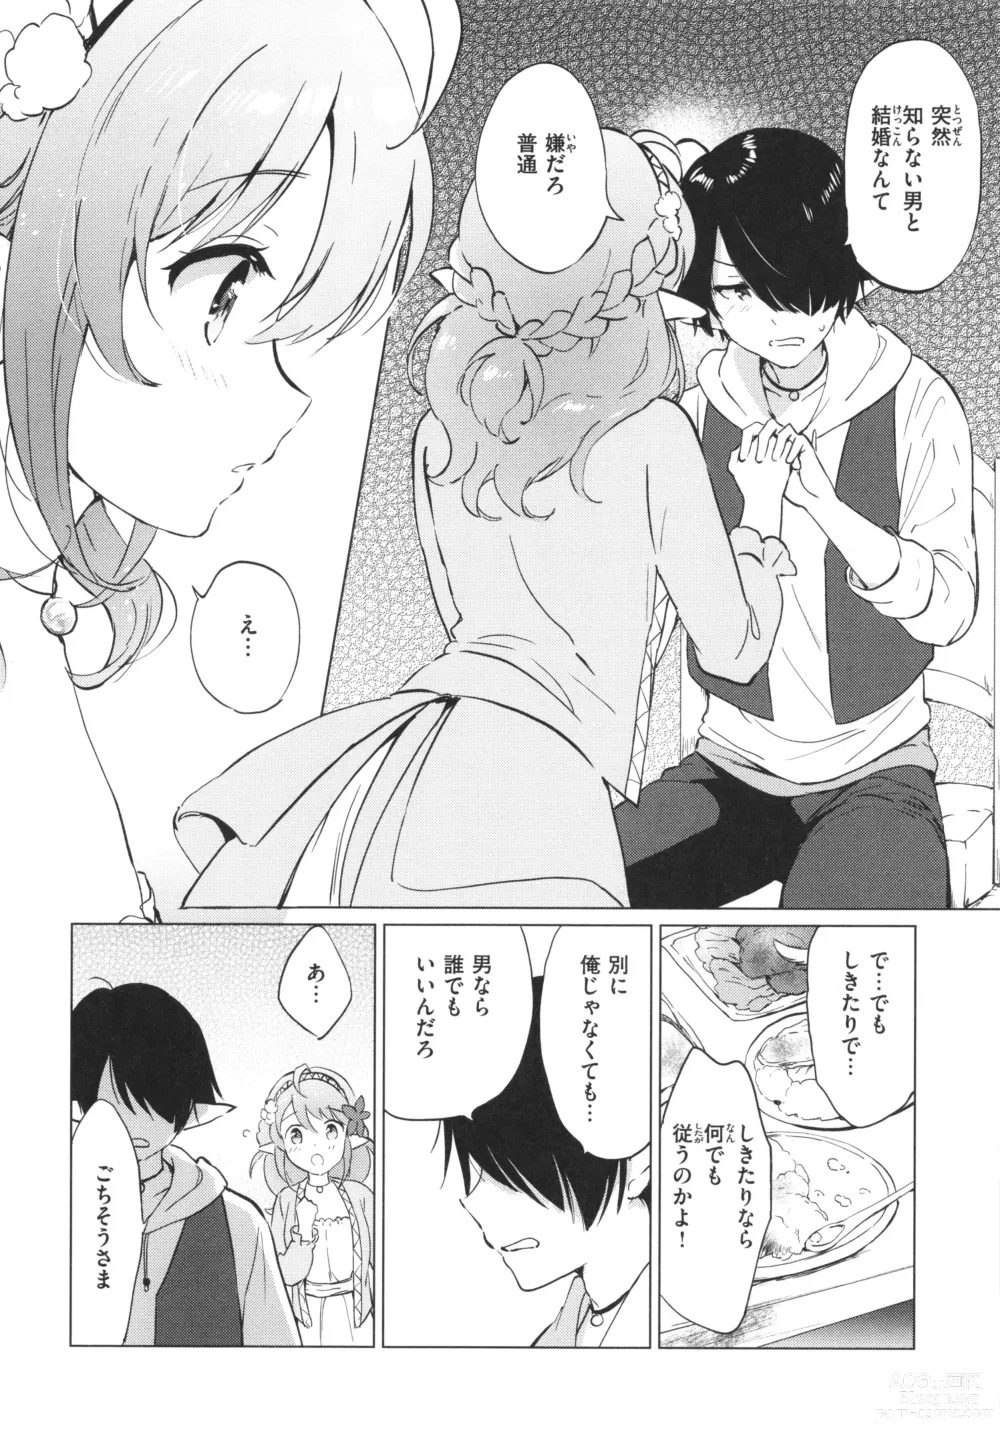 Page 13 of manga Mitsugetsu Paradise - Honeymoon Paradise